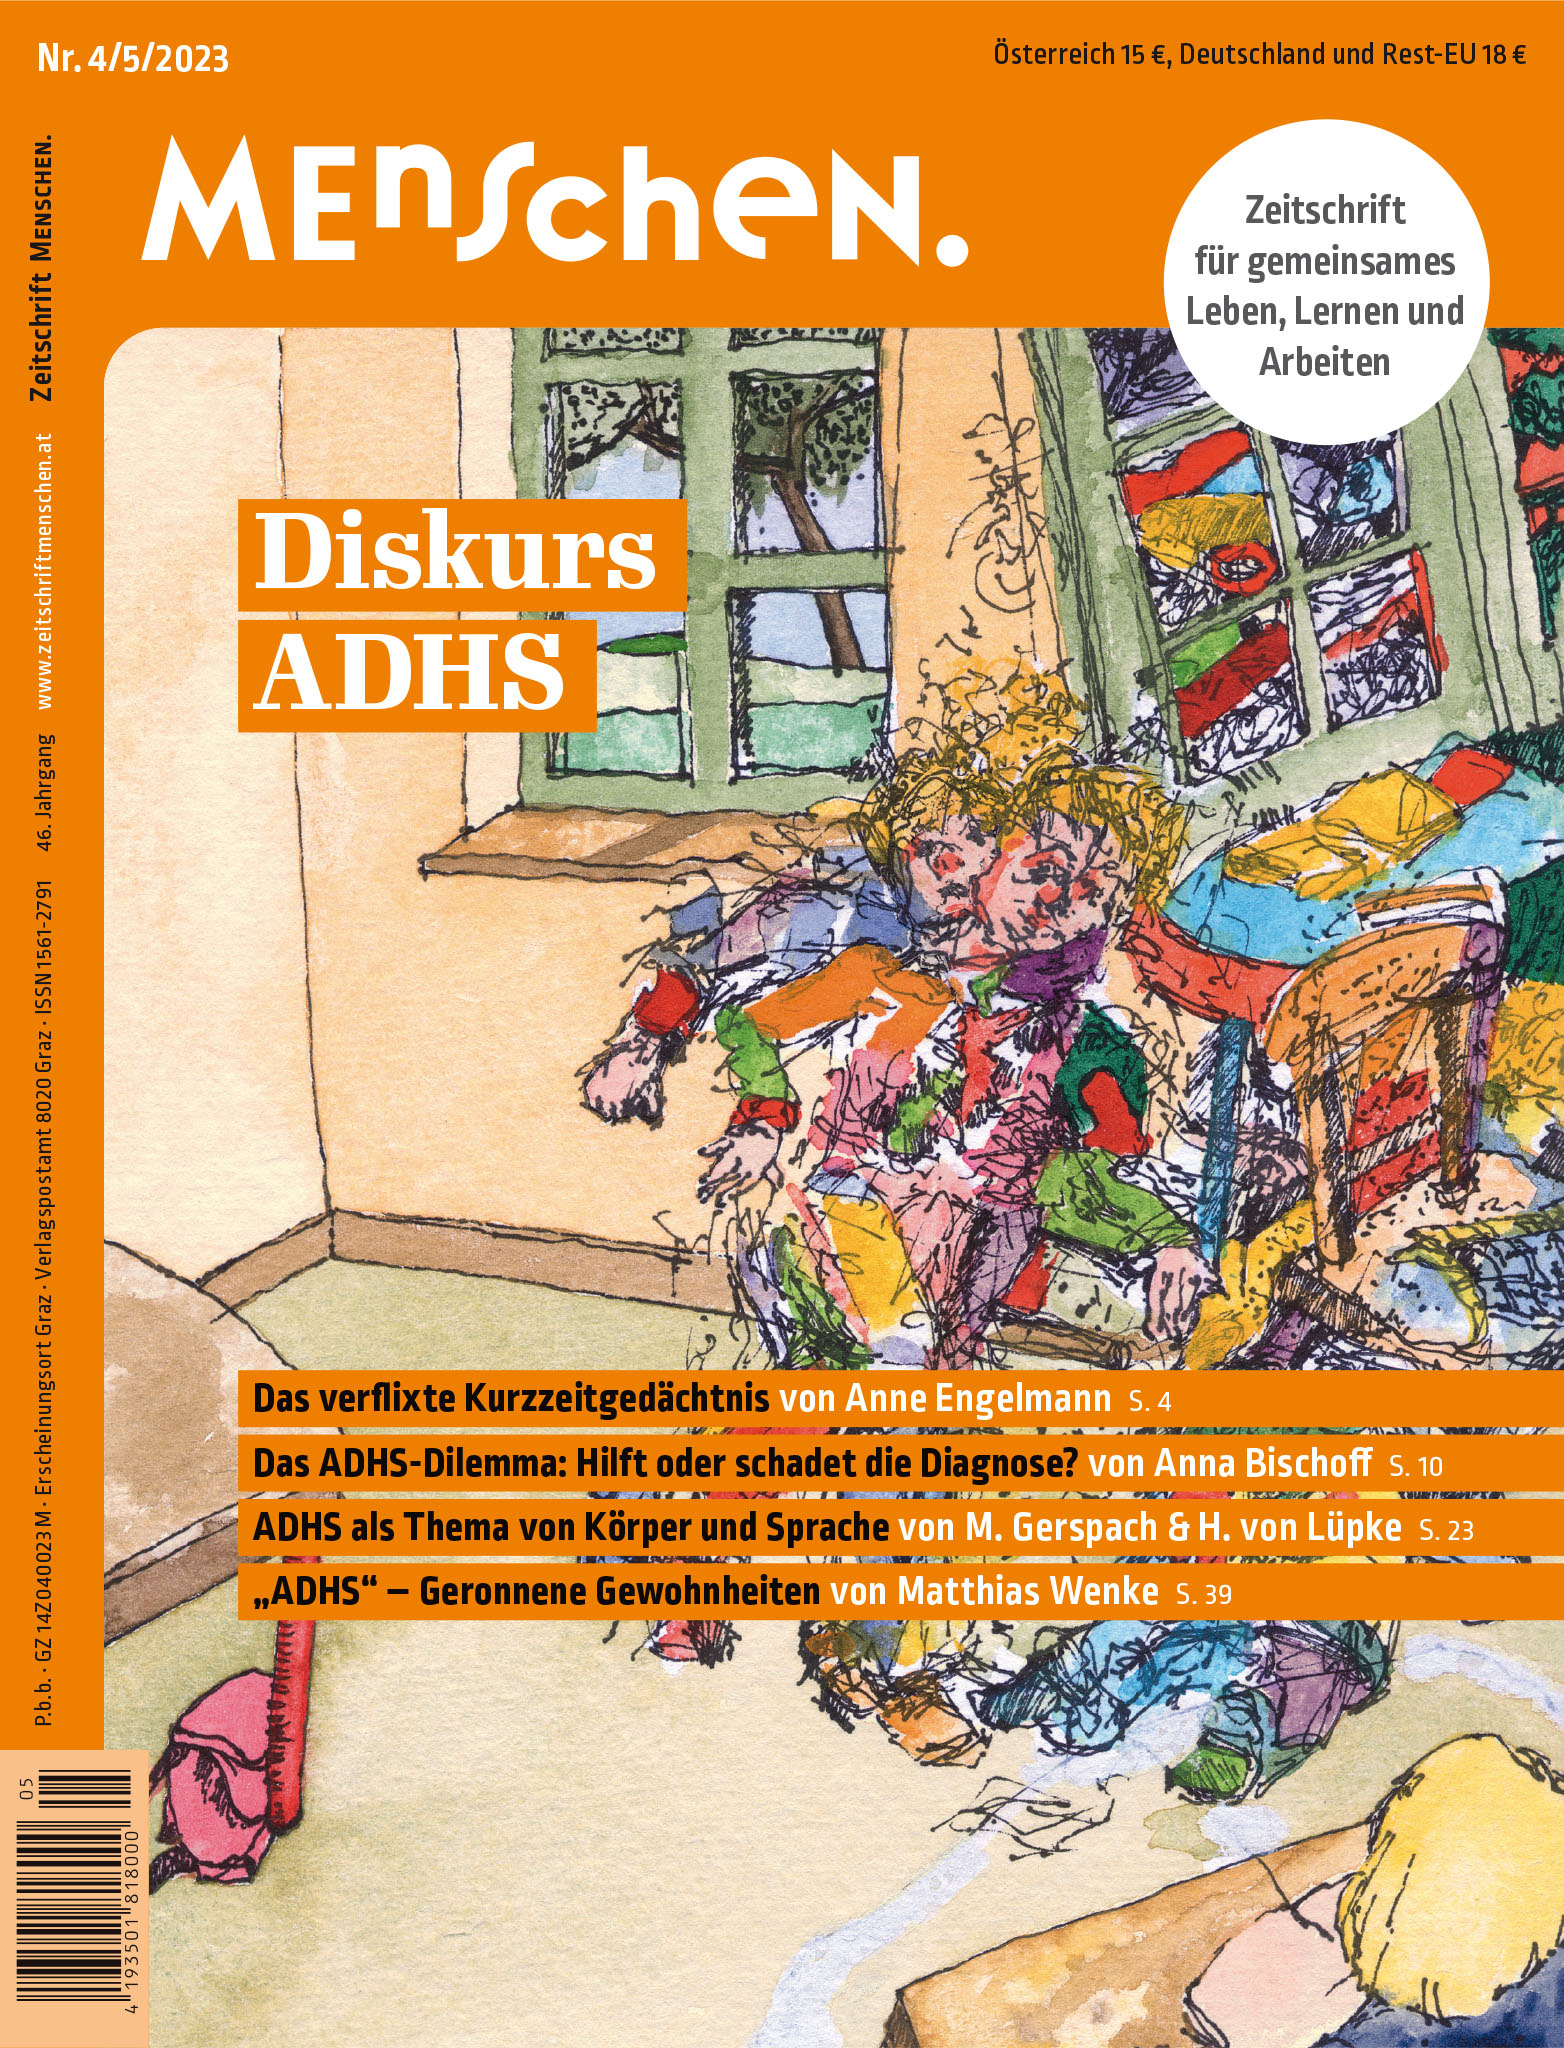 Titelbild der Zeitschrift BEHINDERTE MENSCHEN, Ausgabe 4/5/2023 "Diskurs ADHS"